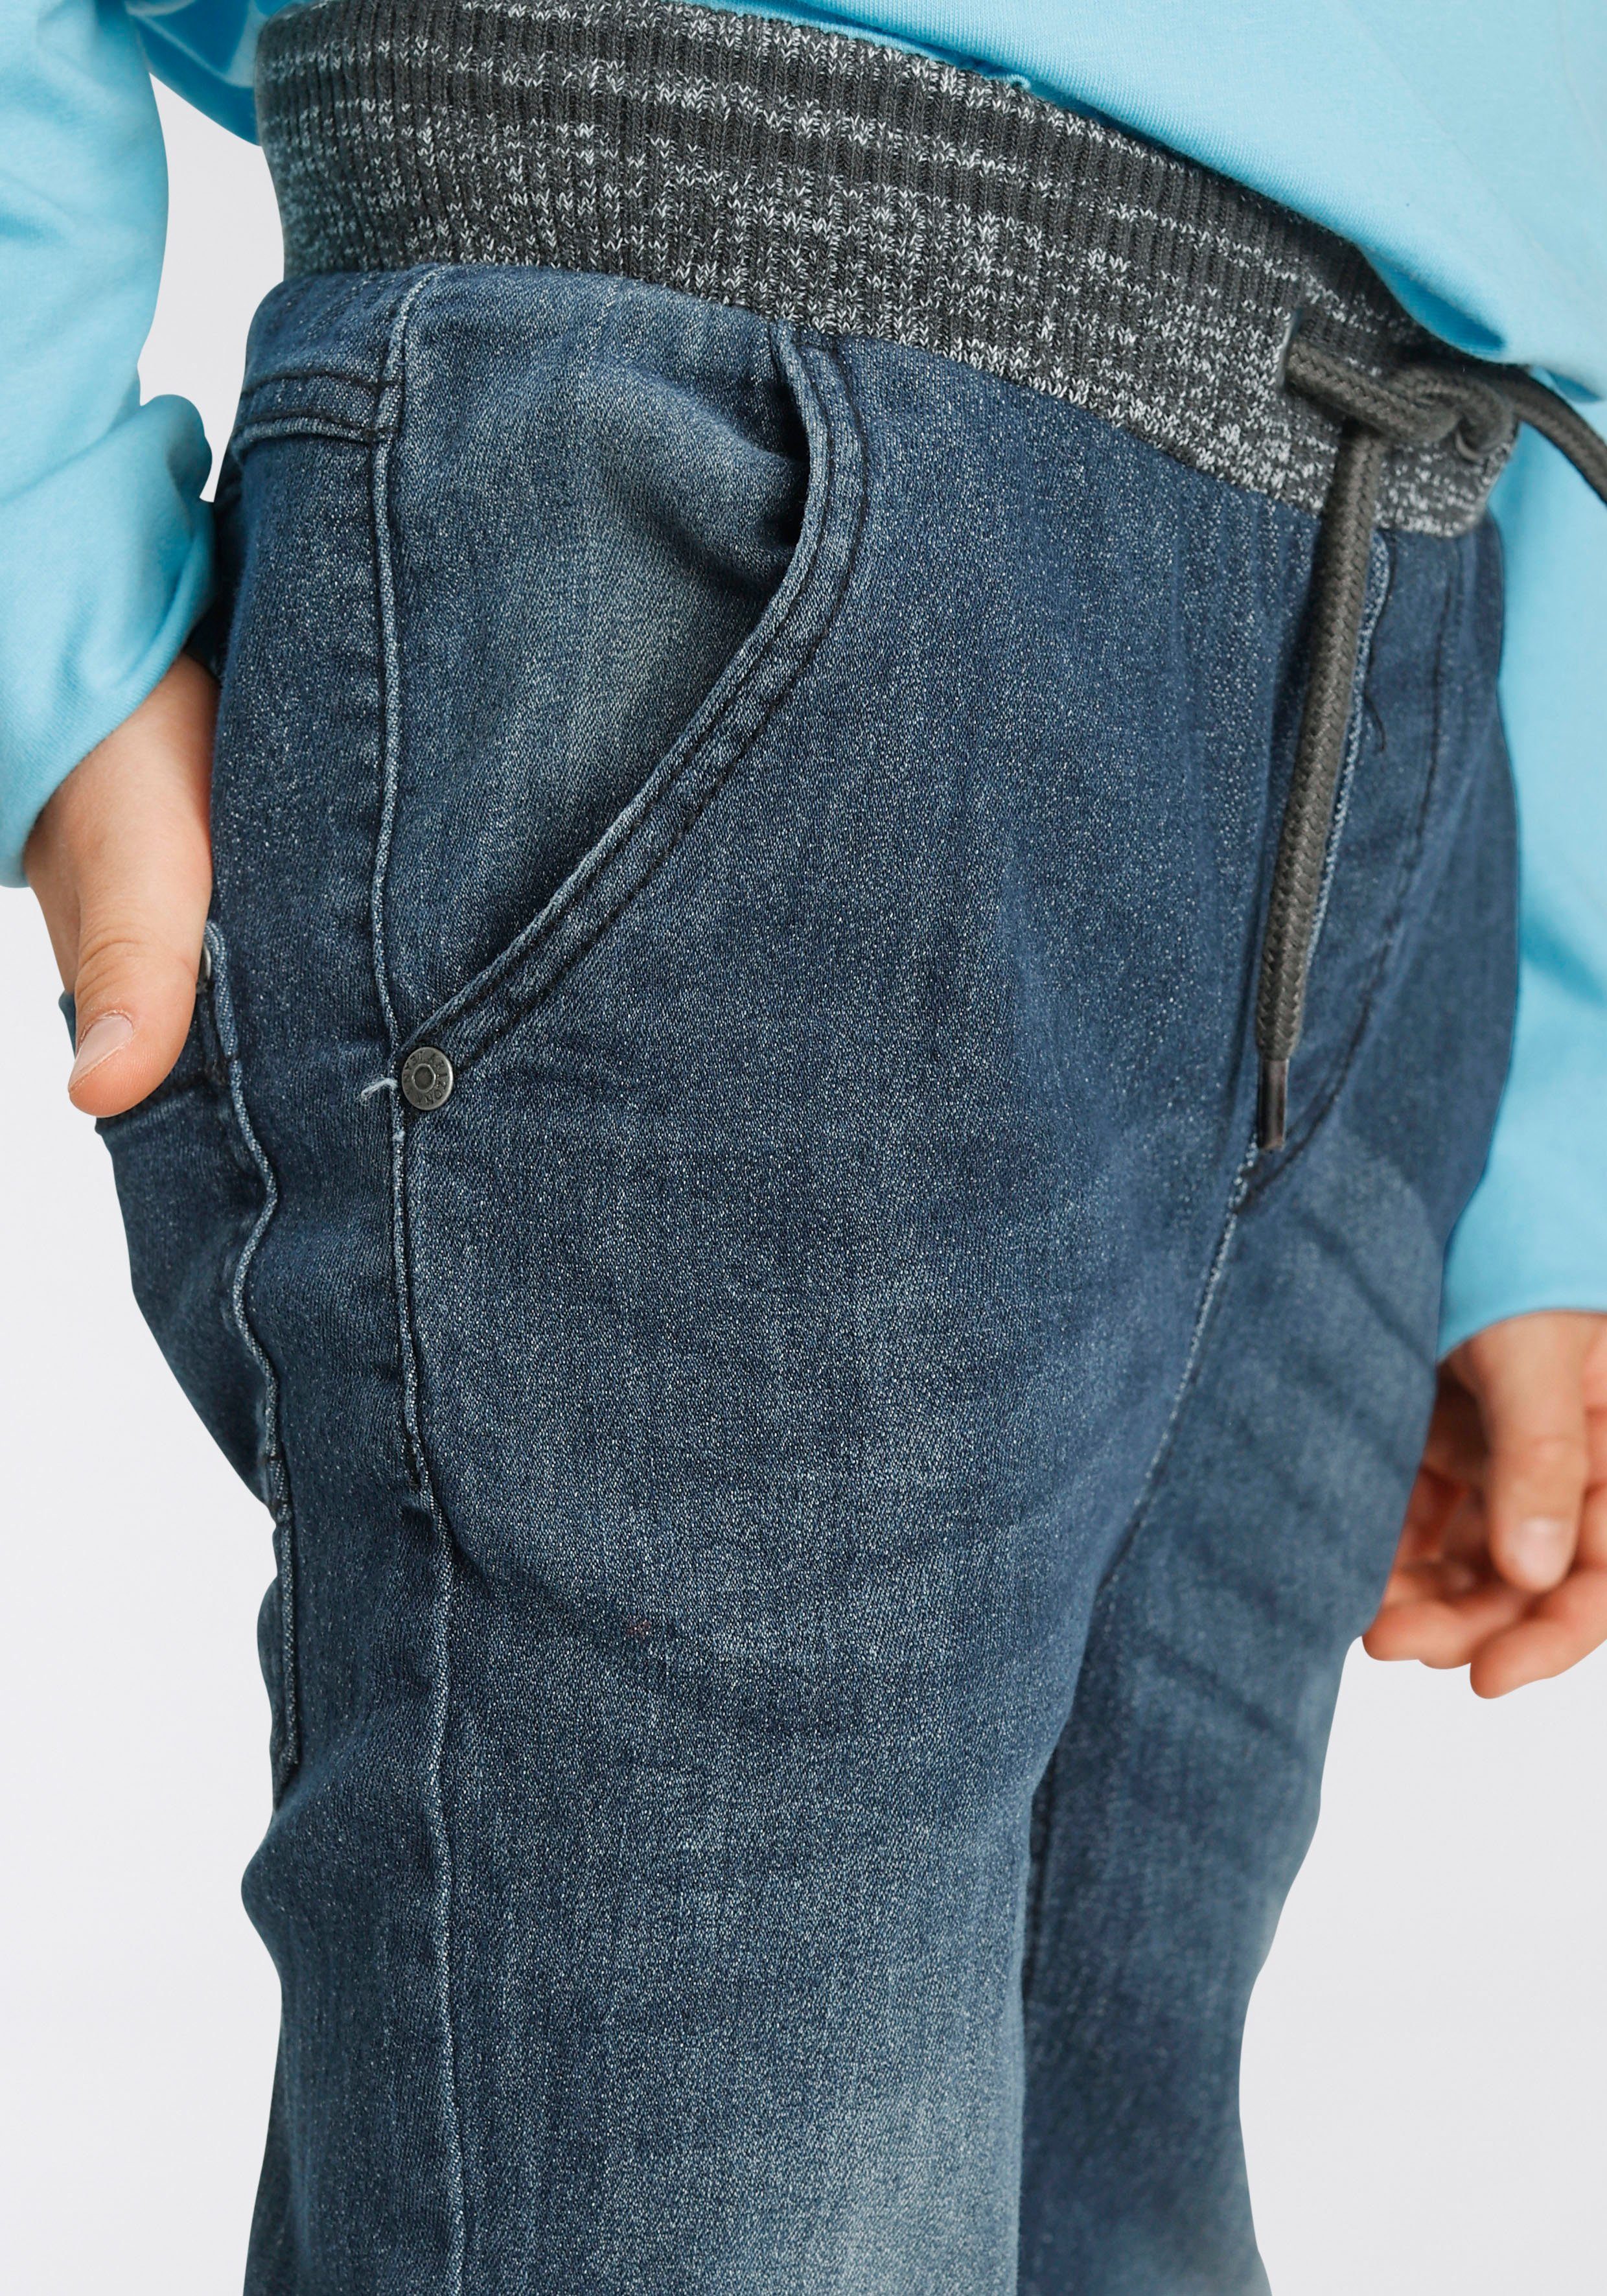 Stretch-Jeans schmalem mit mit Beinverlauf Arizona Rippenbund tollem